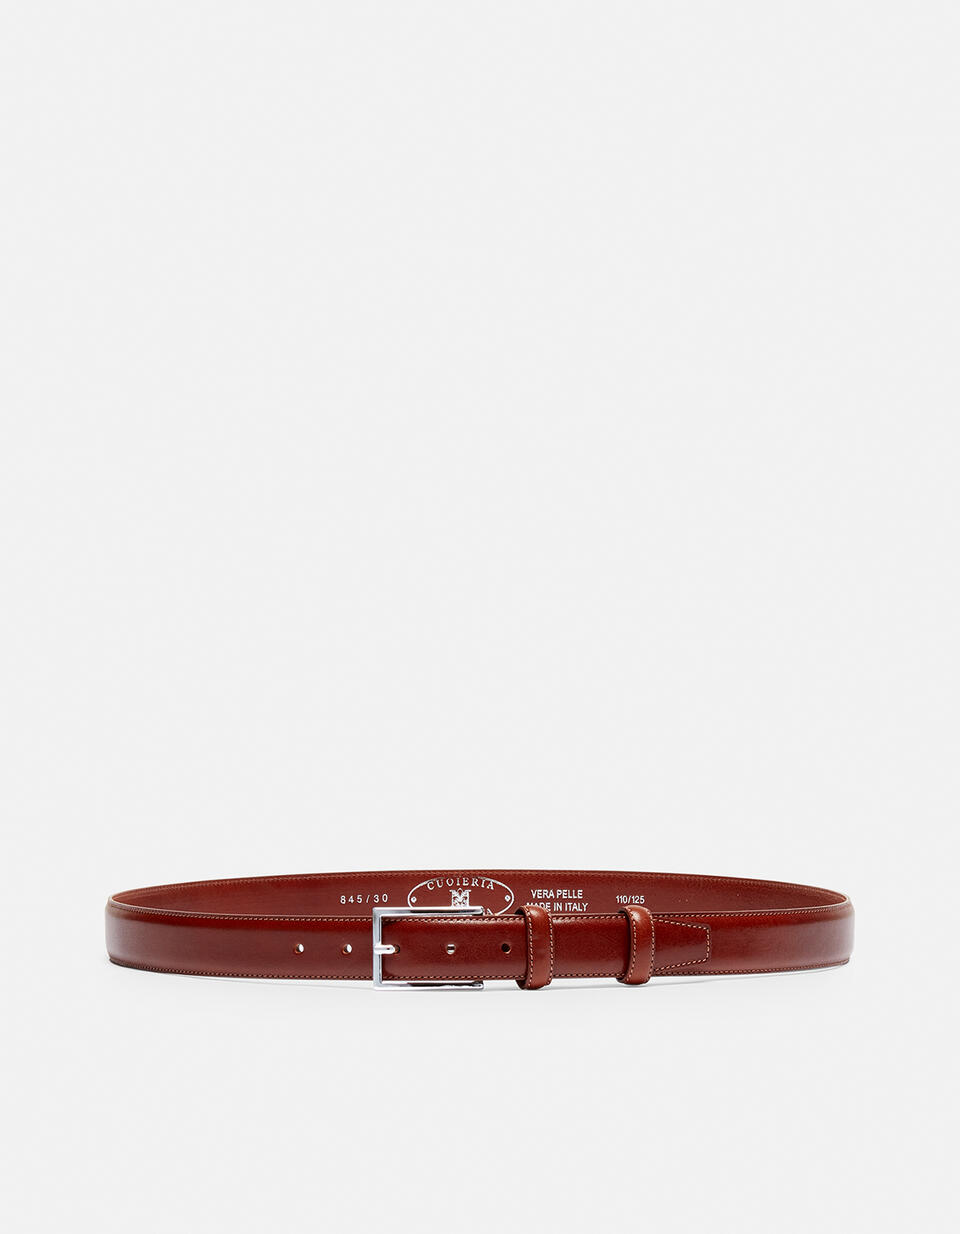 Cintura Elegante in Pelle con Punta quadra alta 3,0 cm  Cuoieria Fiorentina